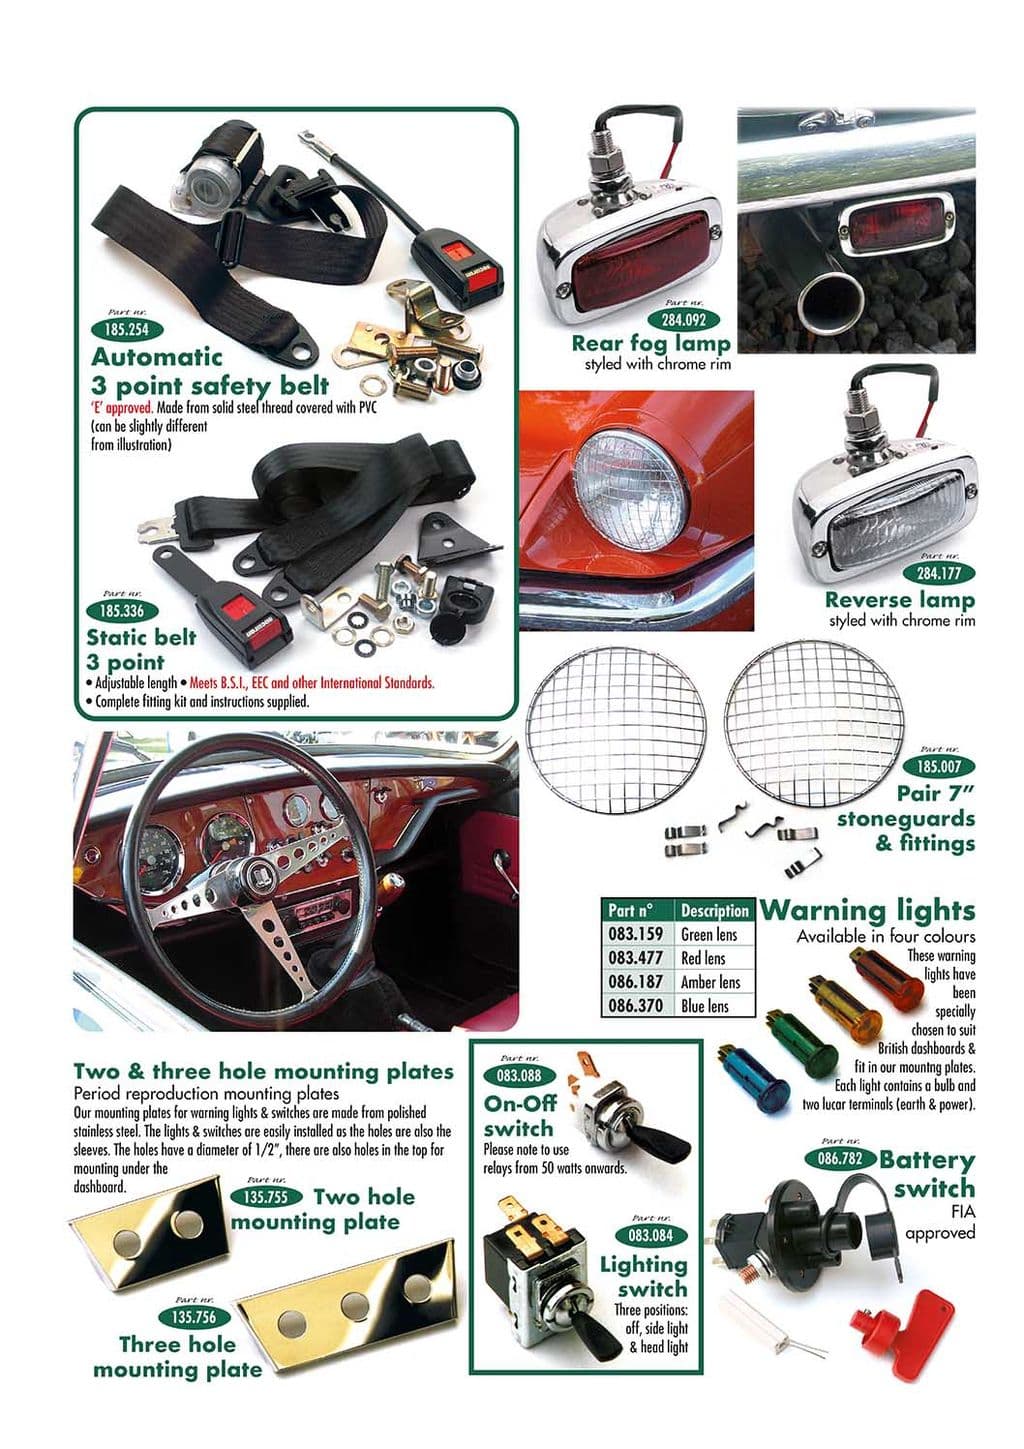 Safety parts & accessories - accesorios estéticos interiores - Accesorios y preparación - Triumph GT6 MKI-III 1966-1973 - Safety parts & accessories - 1